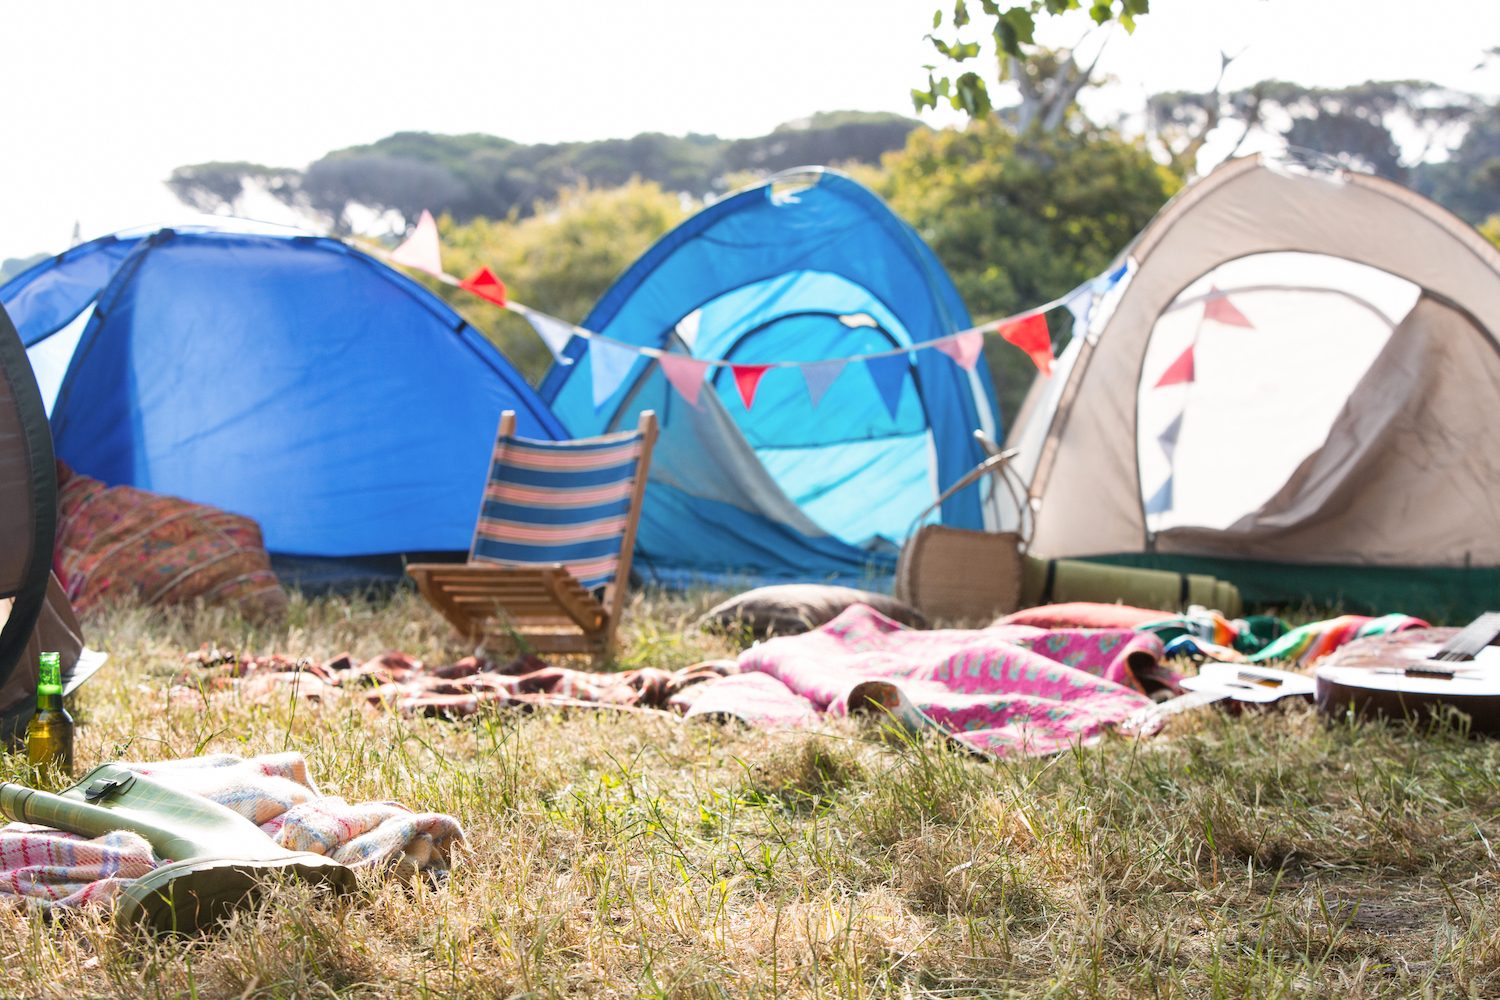 Пустой лагерь. Кемпинг зона пустая. Музыкальный фестиваль фото палатки. Ugly Camping blurry image.